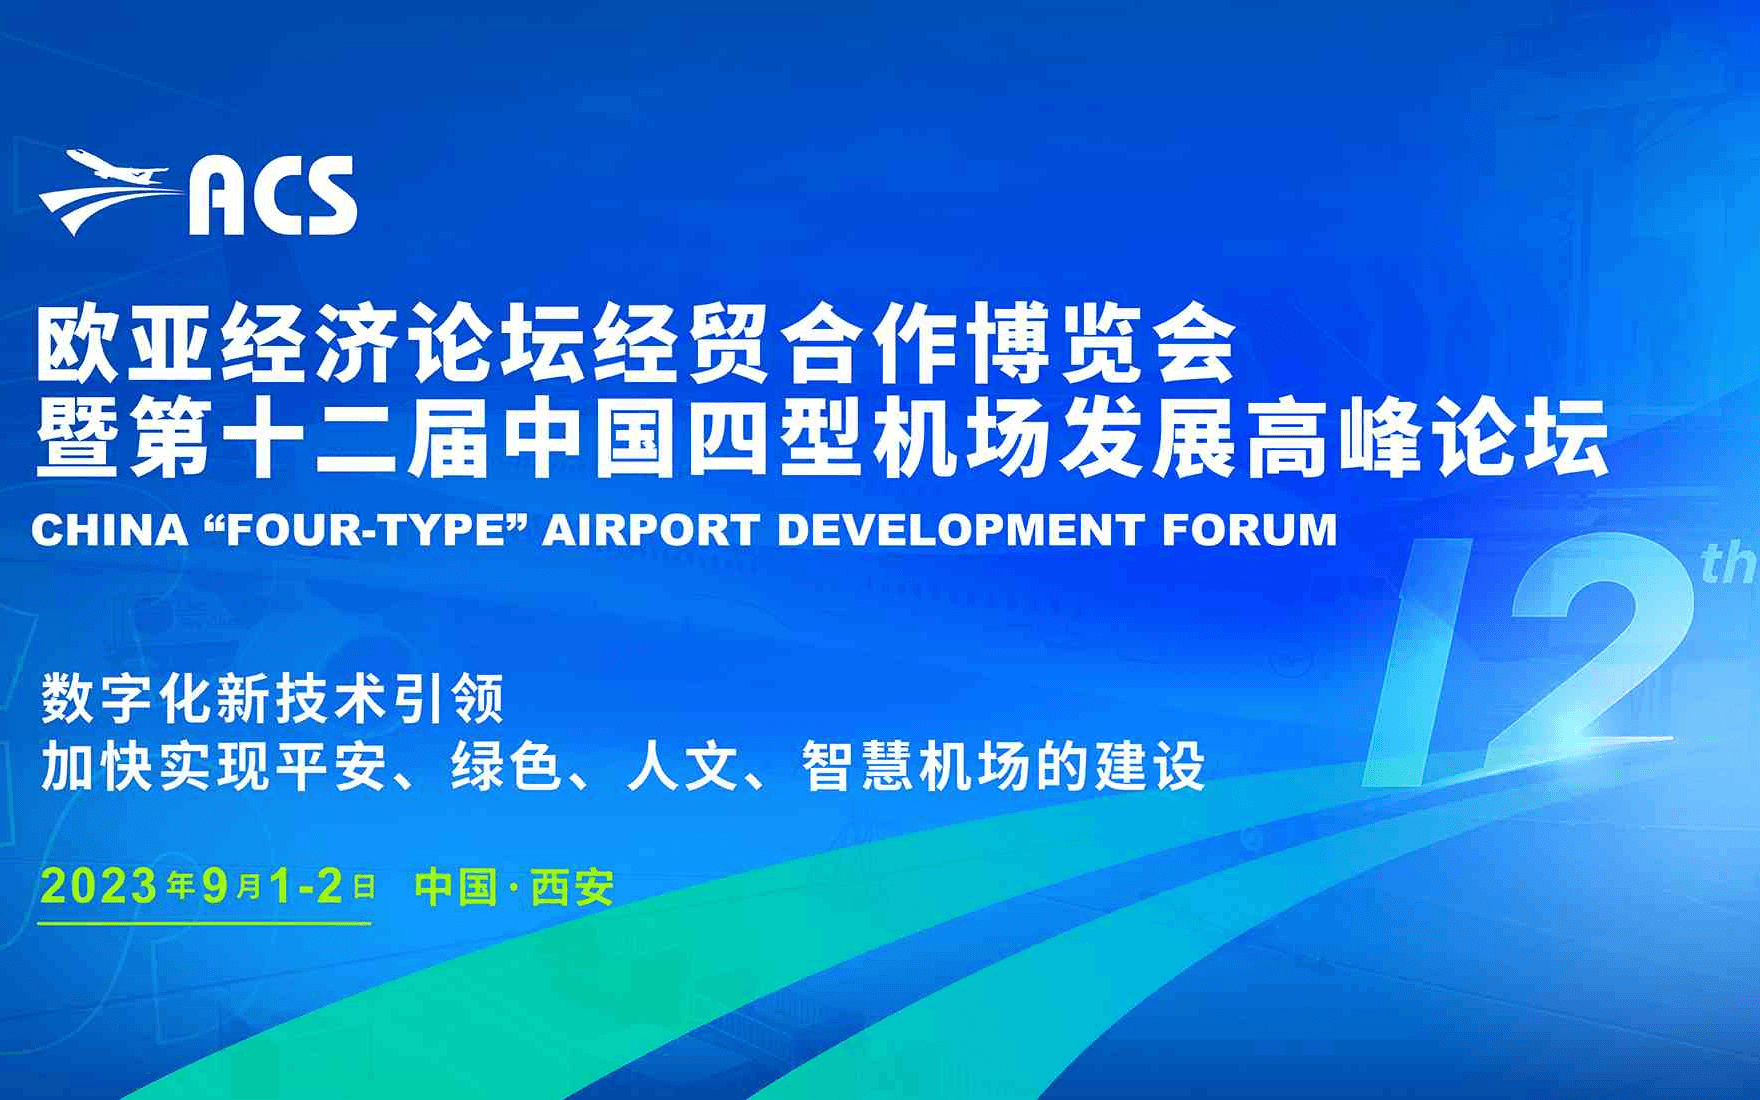 2023欧亚经济论坛经贸合作博览会暨第十二届中国四型机场发展高峰论坛